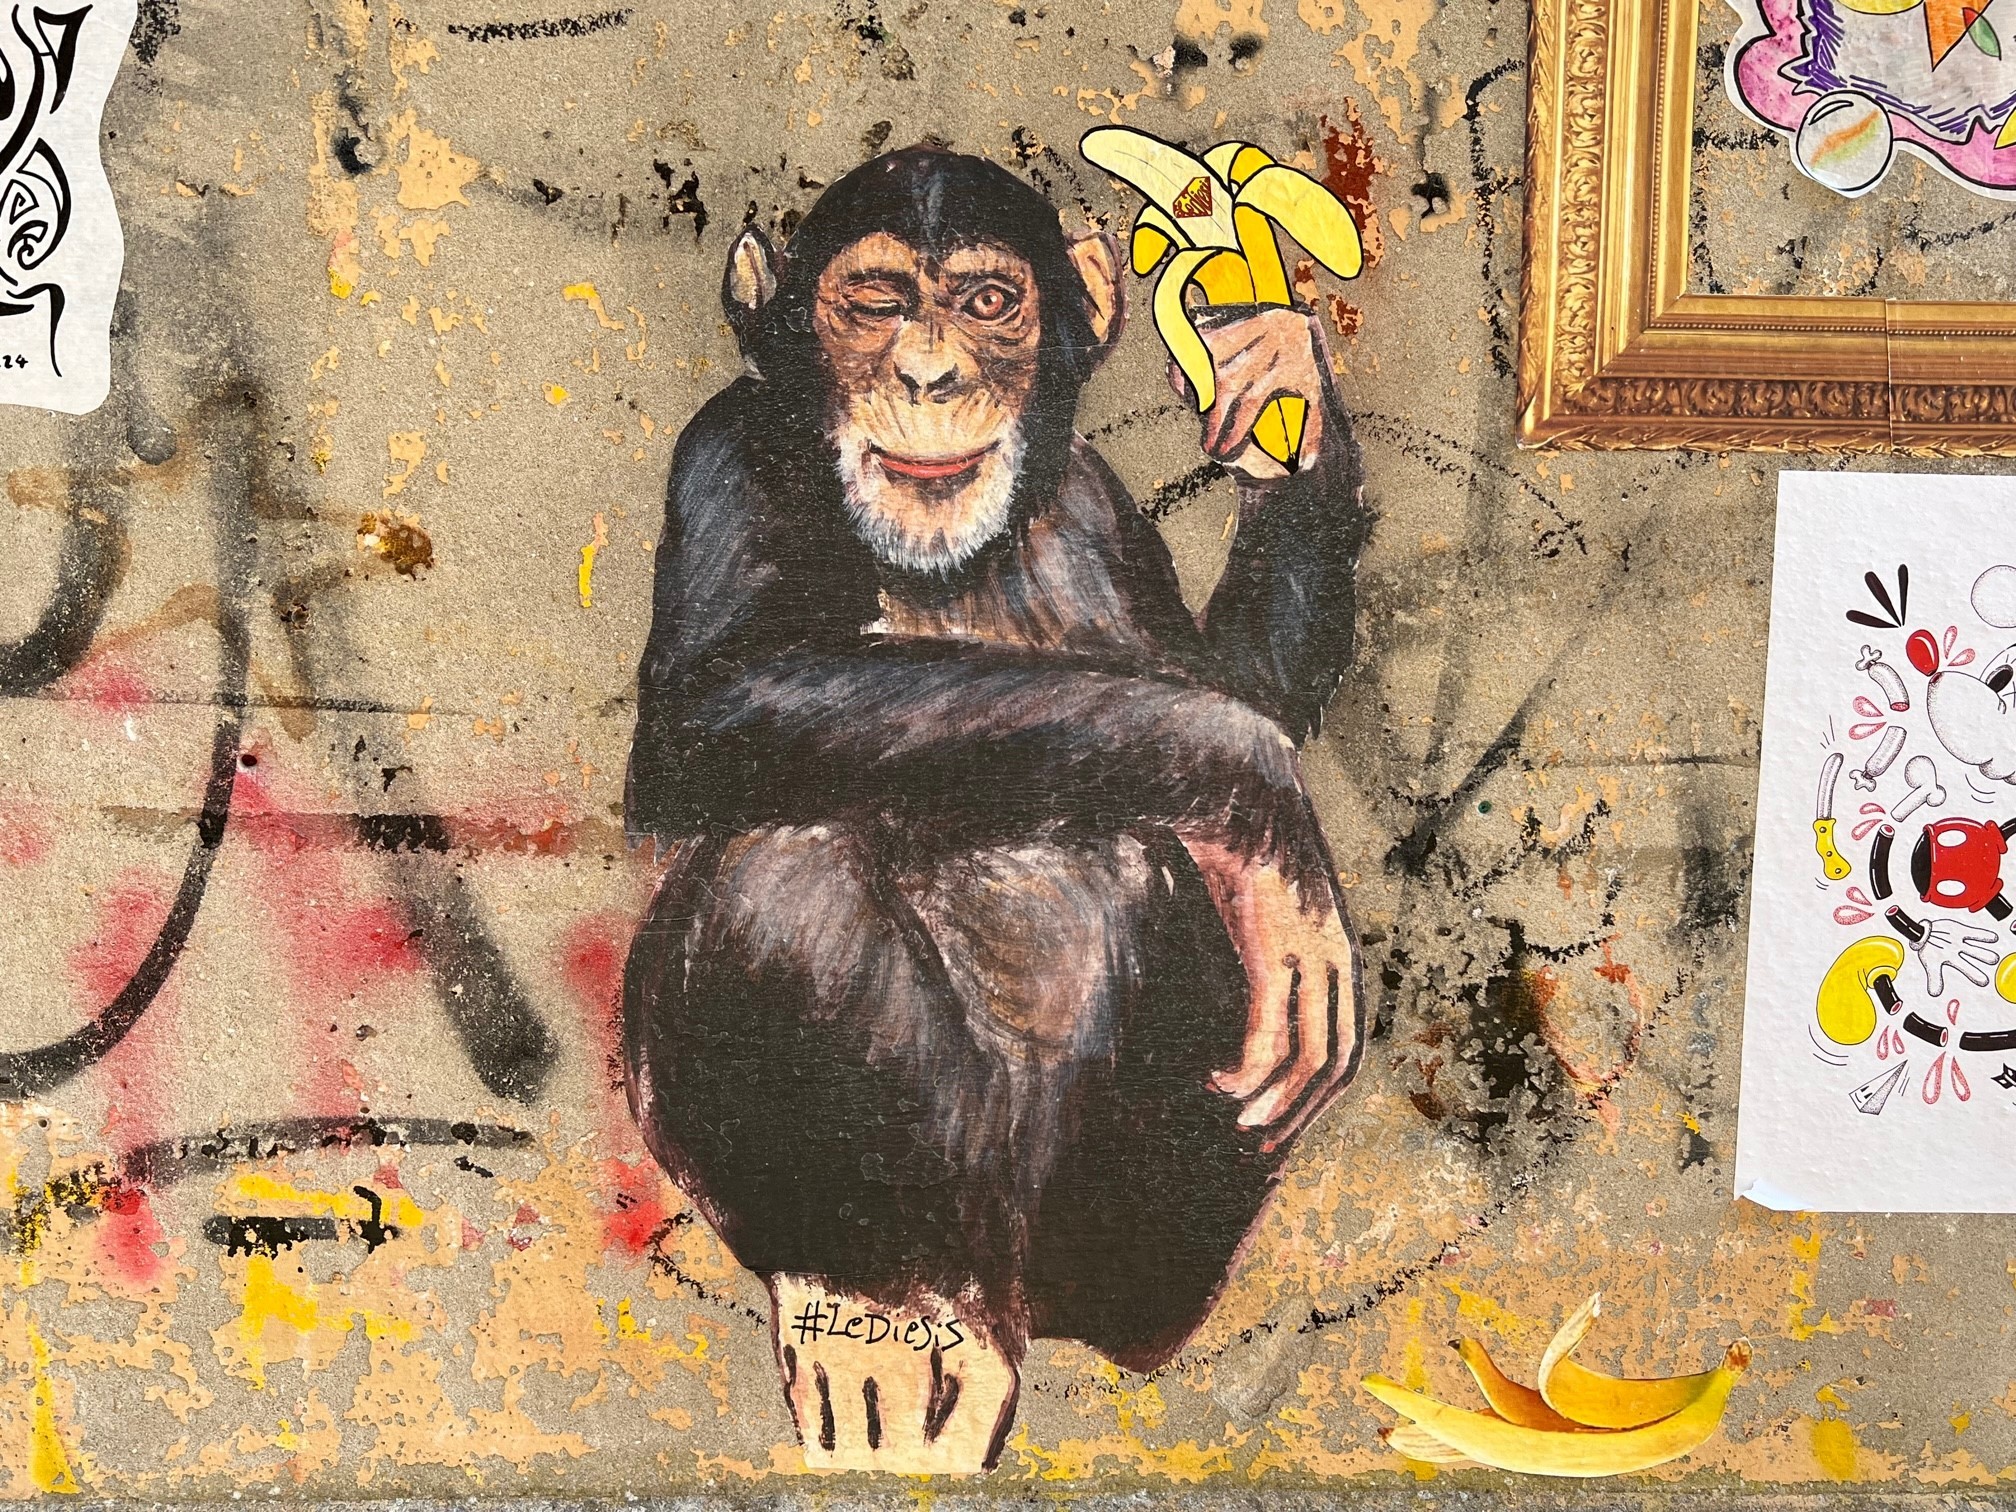 Urban Art eines Affen mit Banane, der mit einem Augen zwinkert als Symbolbild für Resilienz.